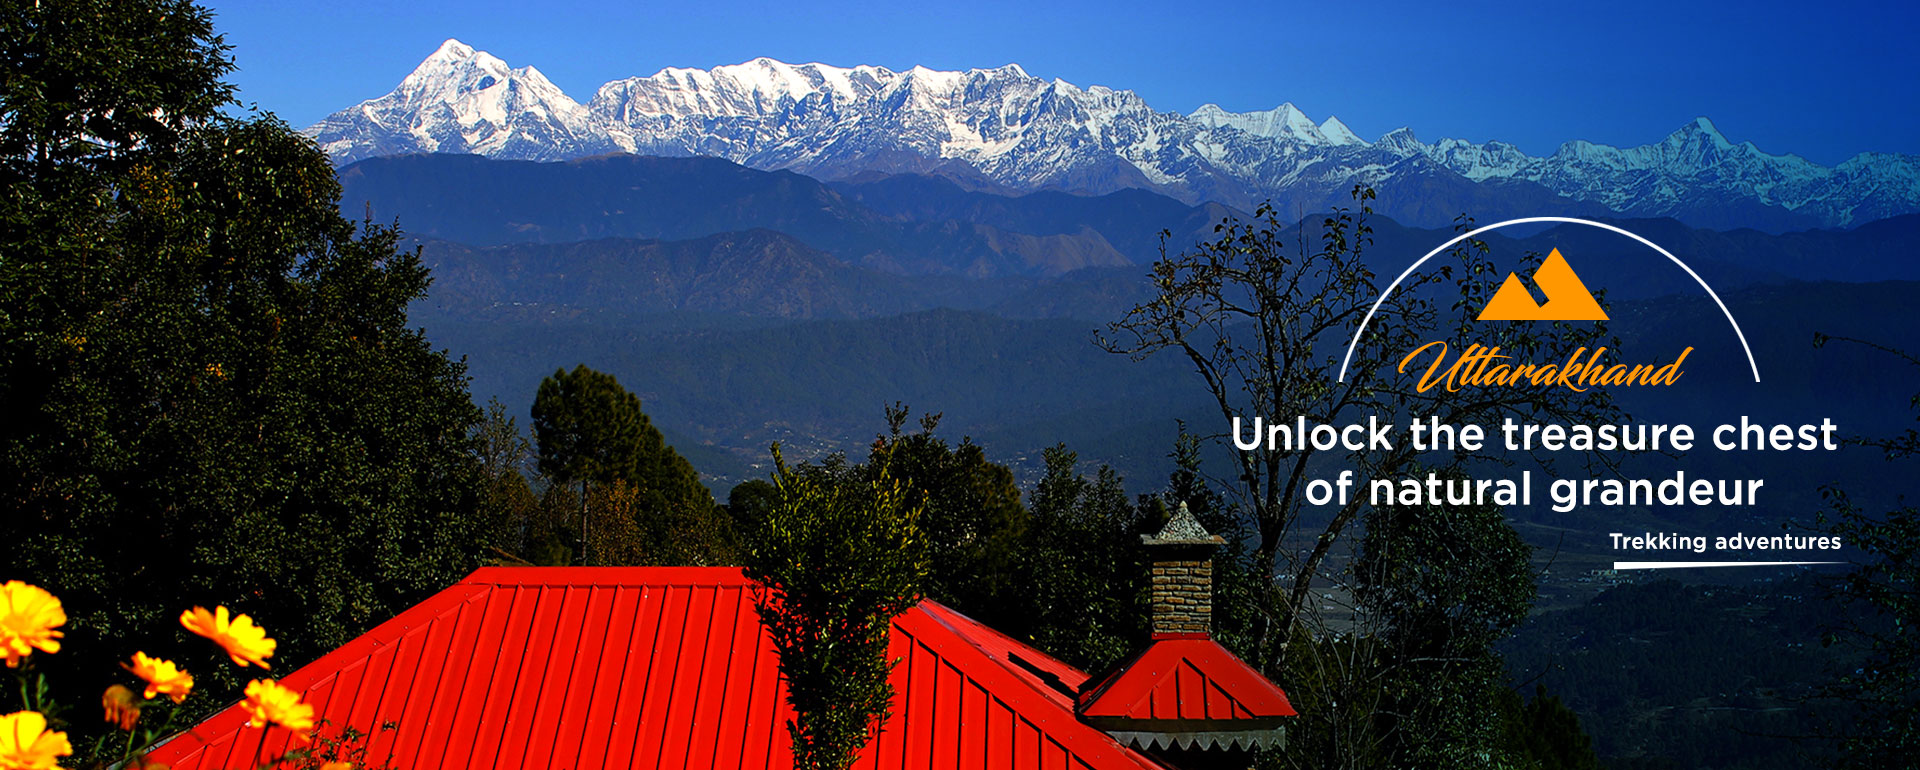 Majestic Himalayan Tours & Treks